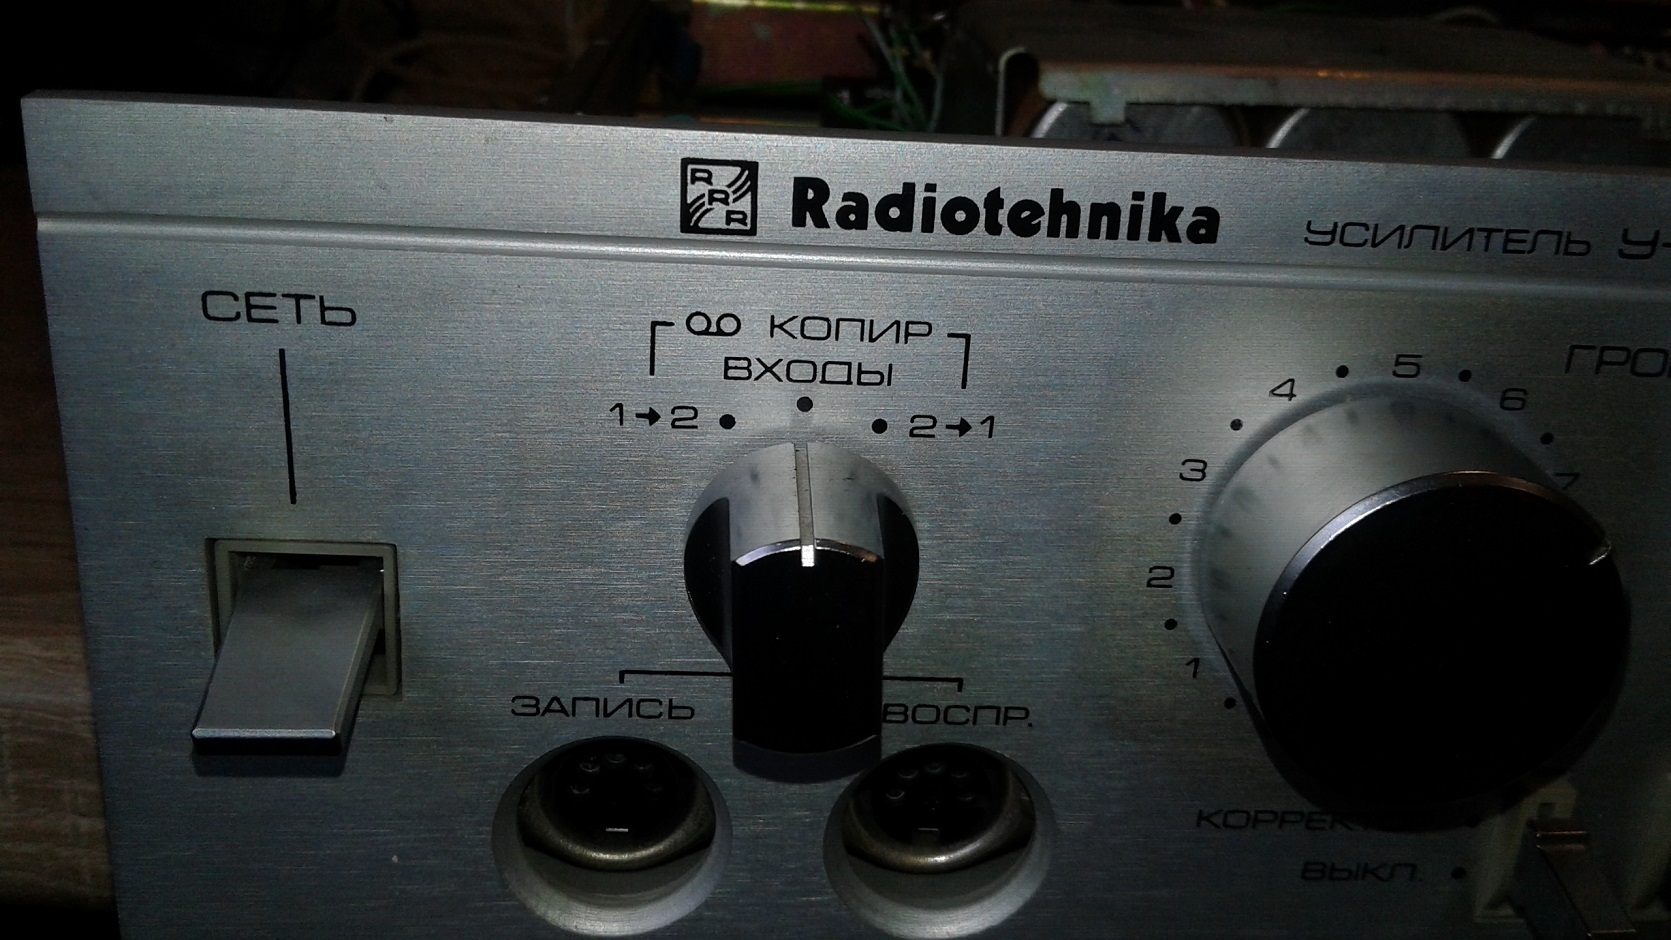 radiotehnika